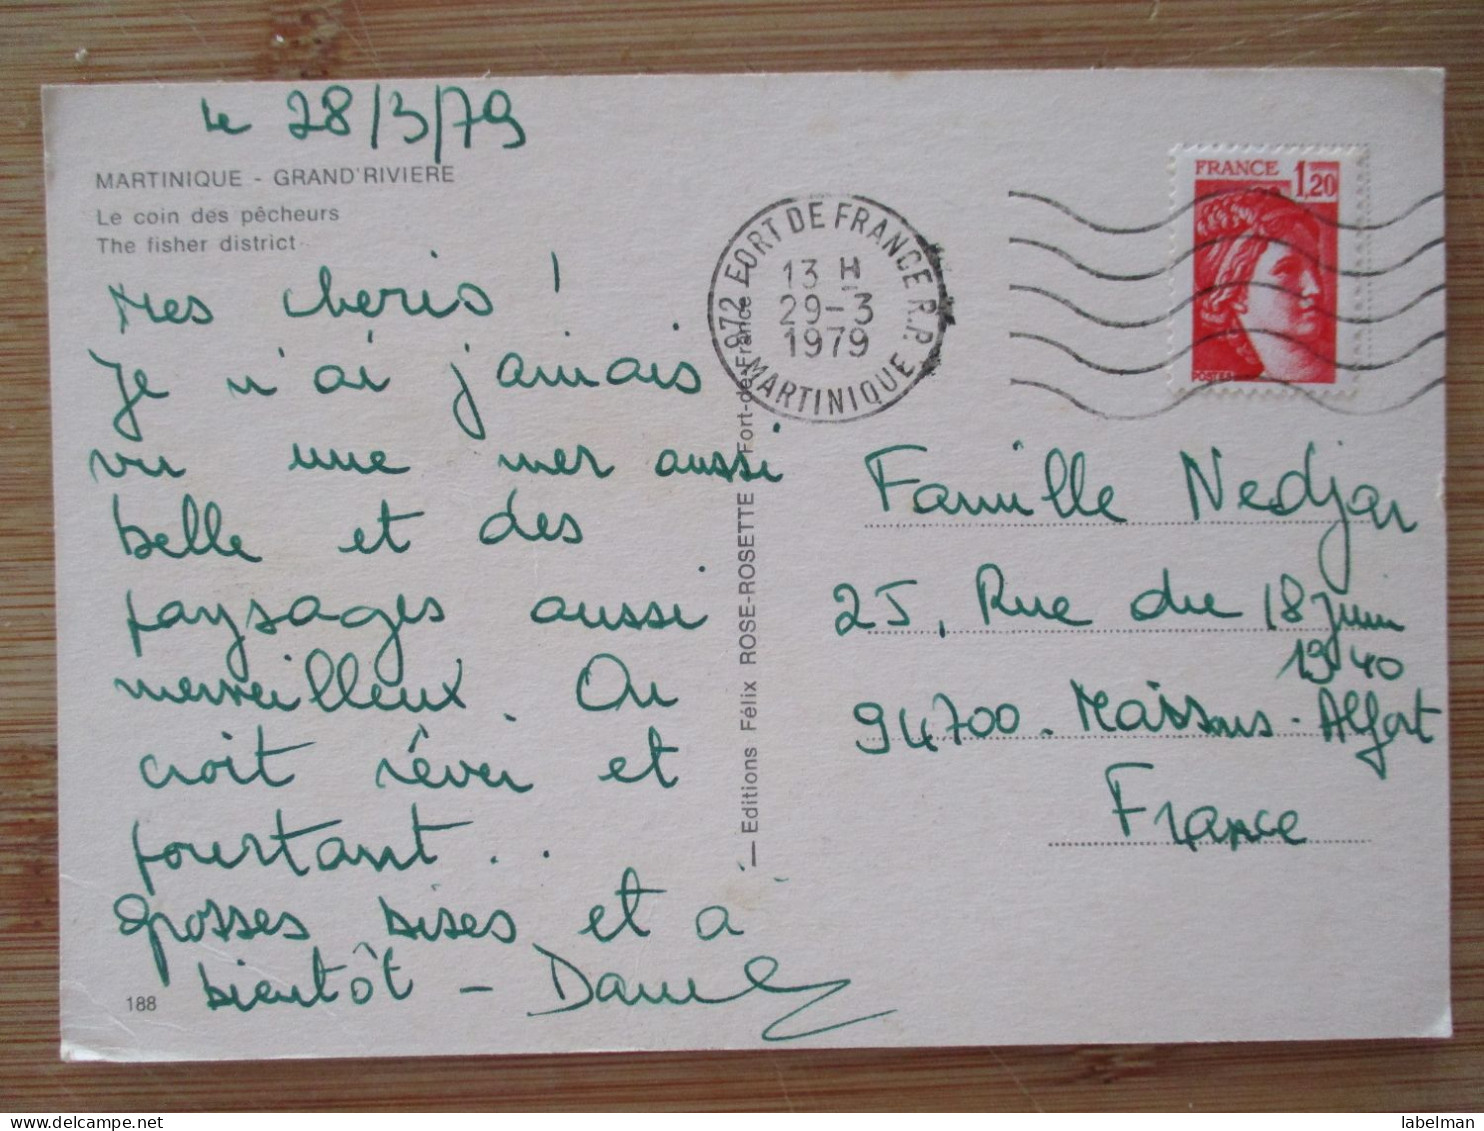 FRANCE MARTINIQUE GRAND RIVIERE KARTE CARD POSTKAART POSTCARD CARTE POSTALE POSTKARTE CARTOLINA ANSICHTSKARTE - Montlucon